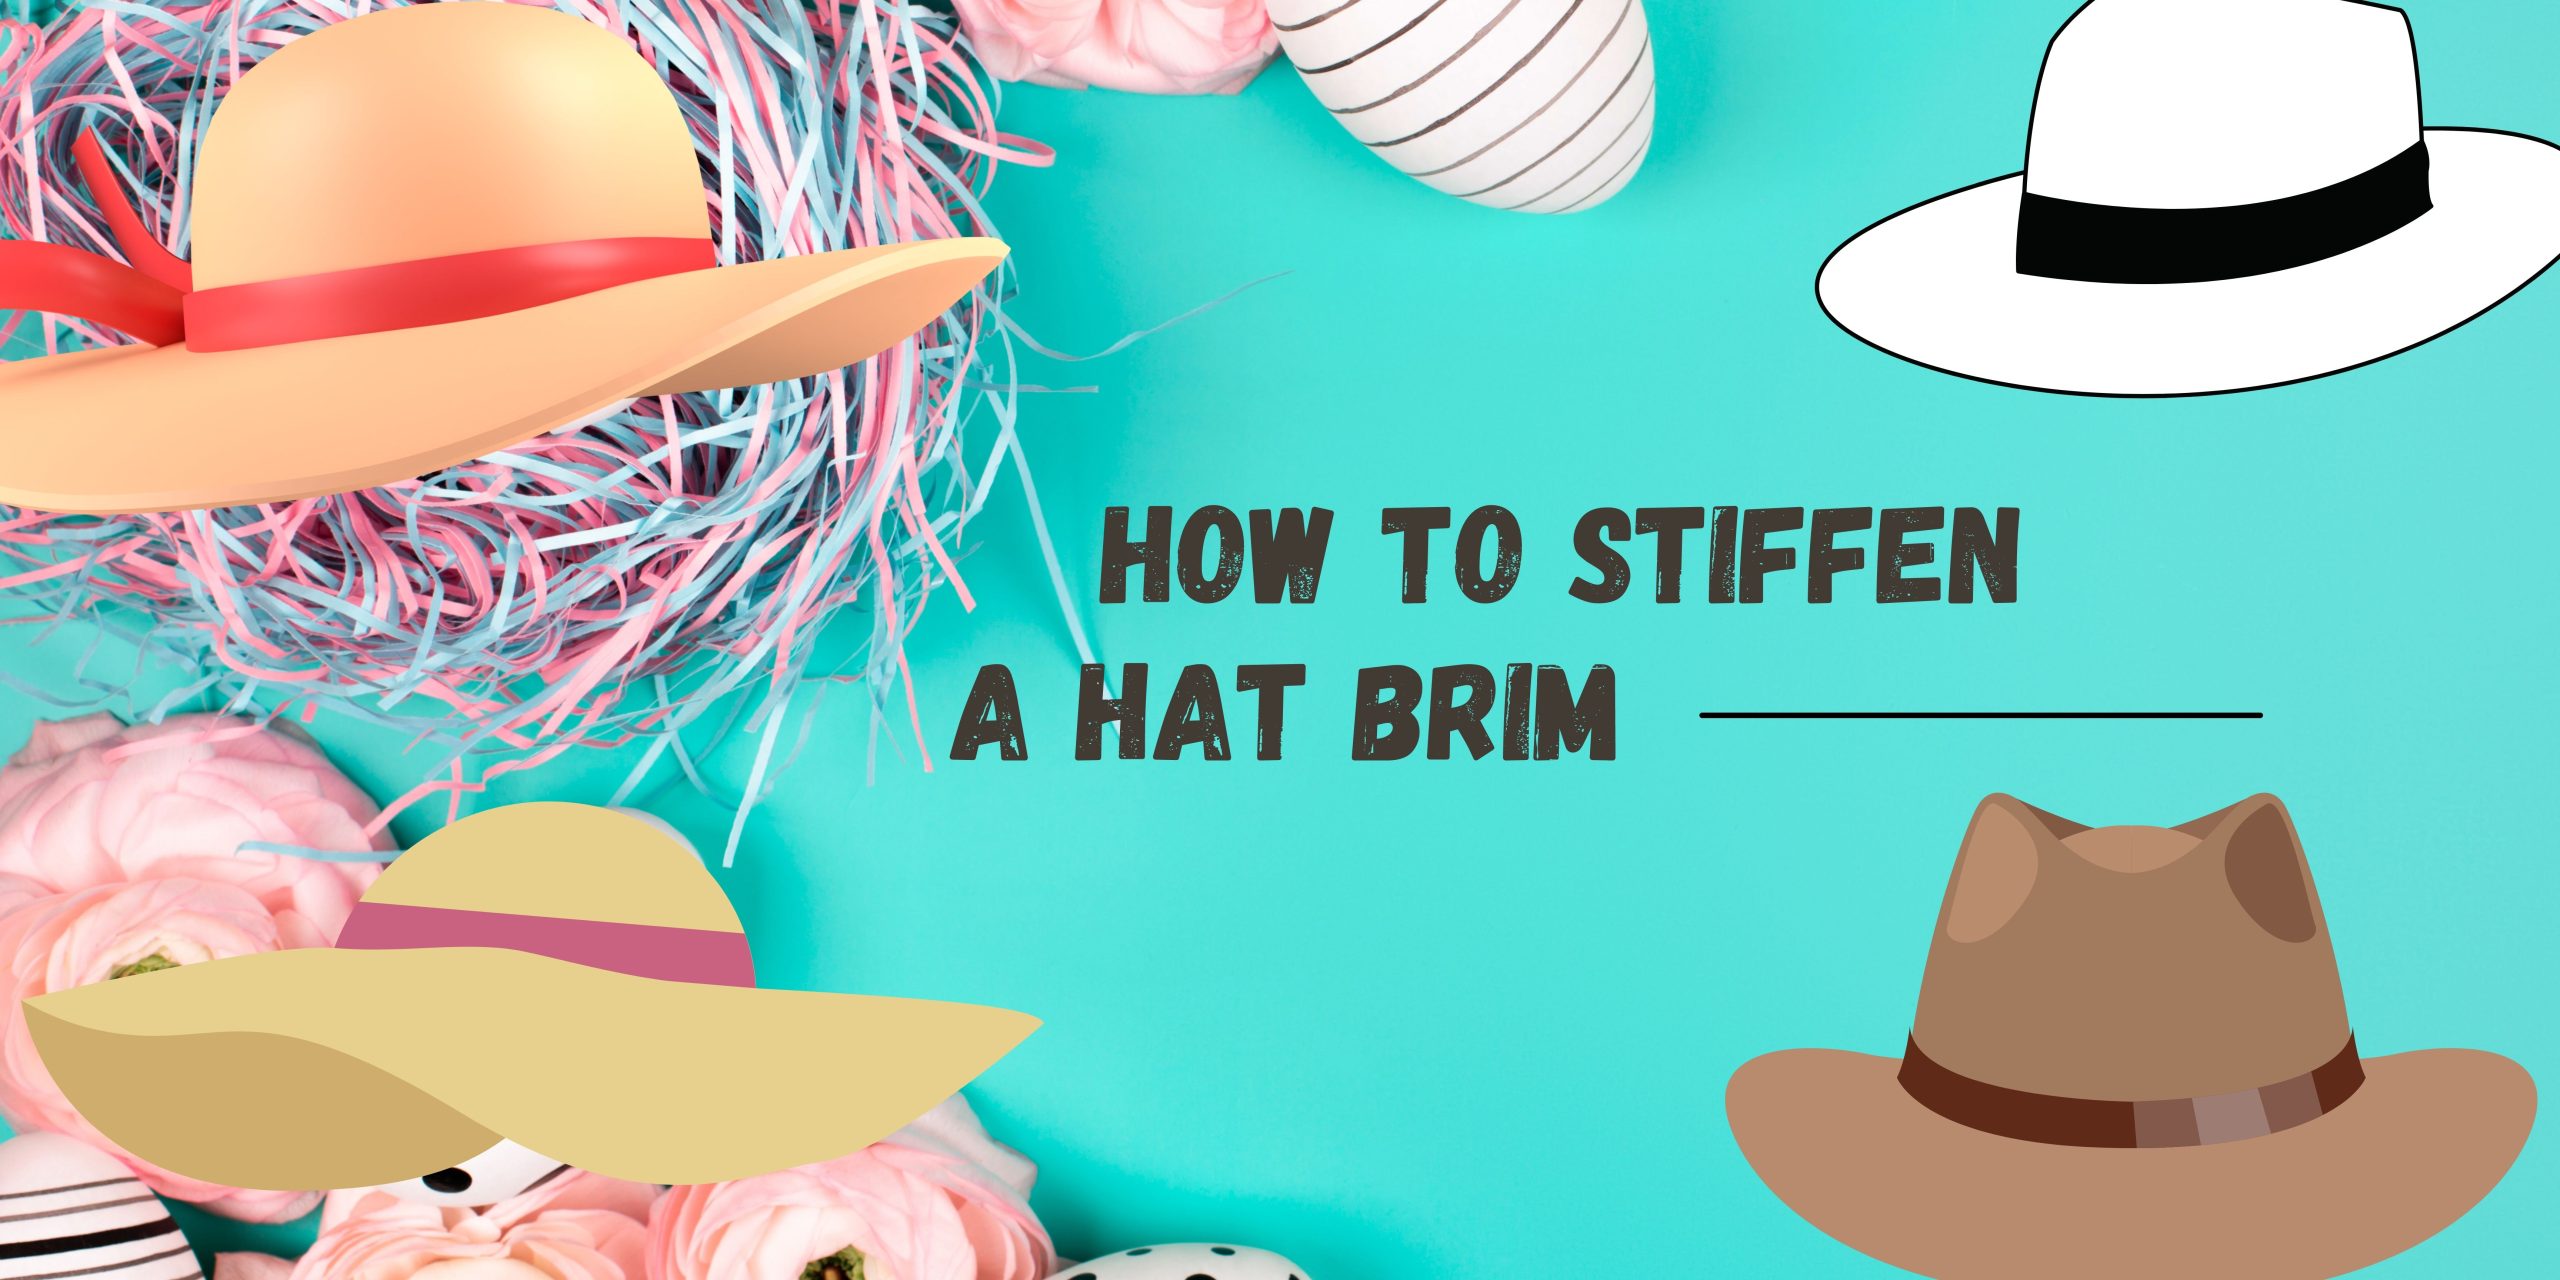 How to stiffen a hat brim